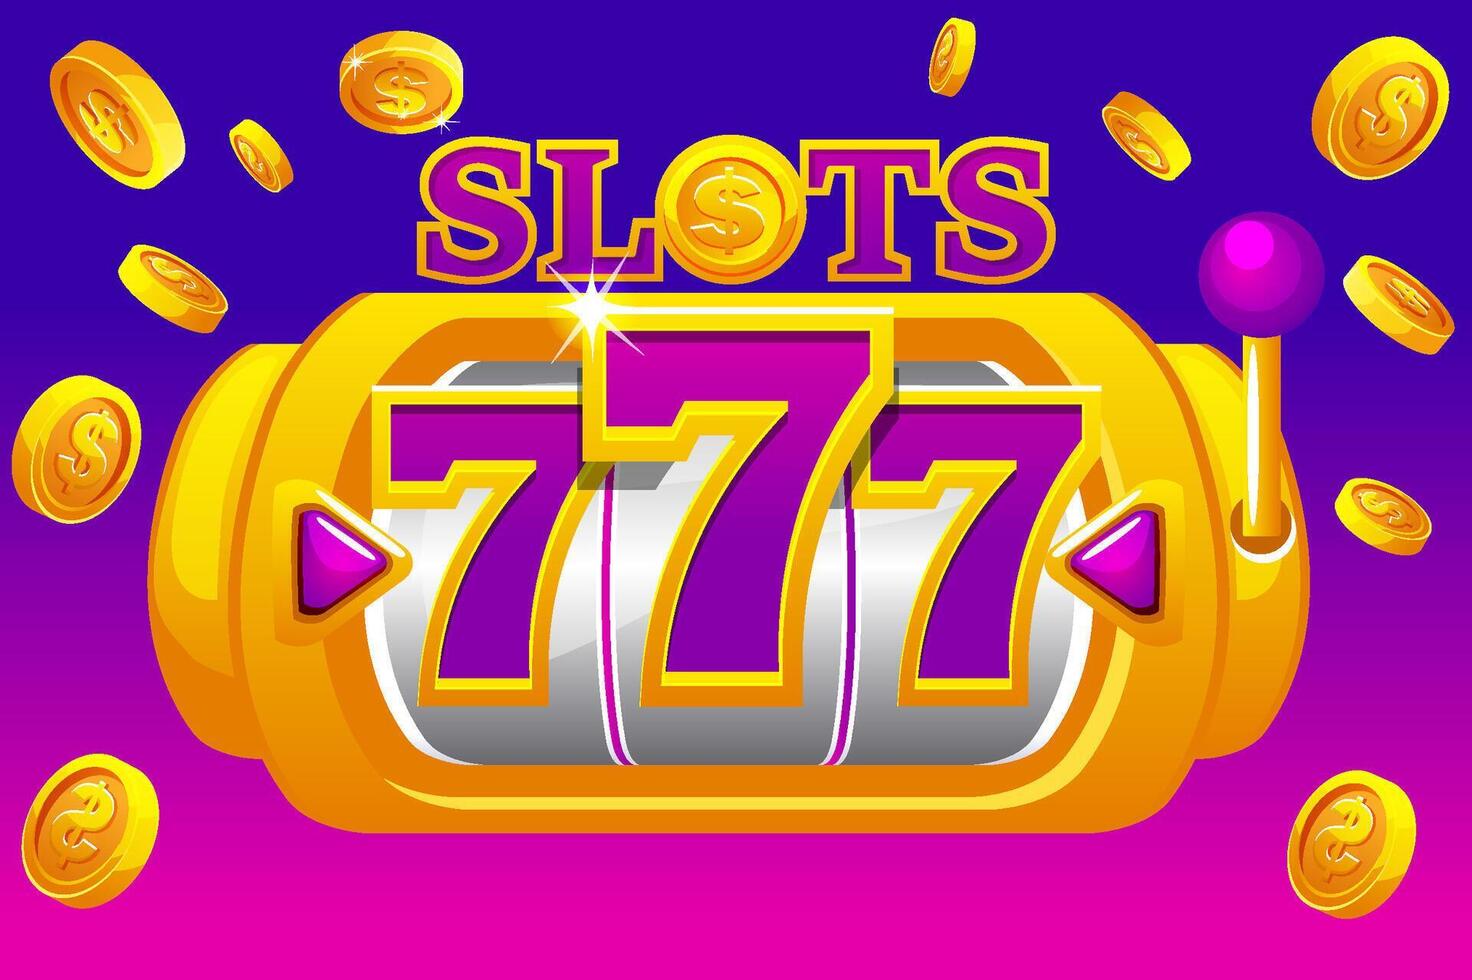 Slot Maschine 777 mit Explosion Münzen. Banner zum ein Kasino Spiel. vektor